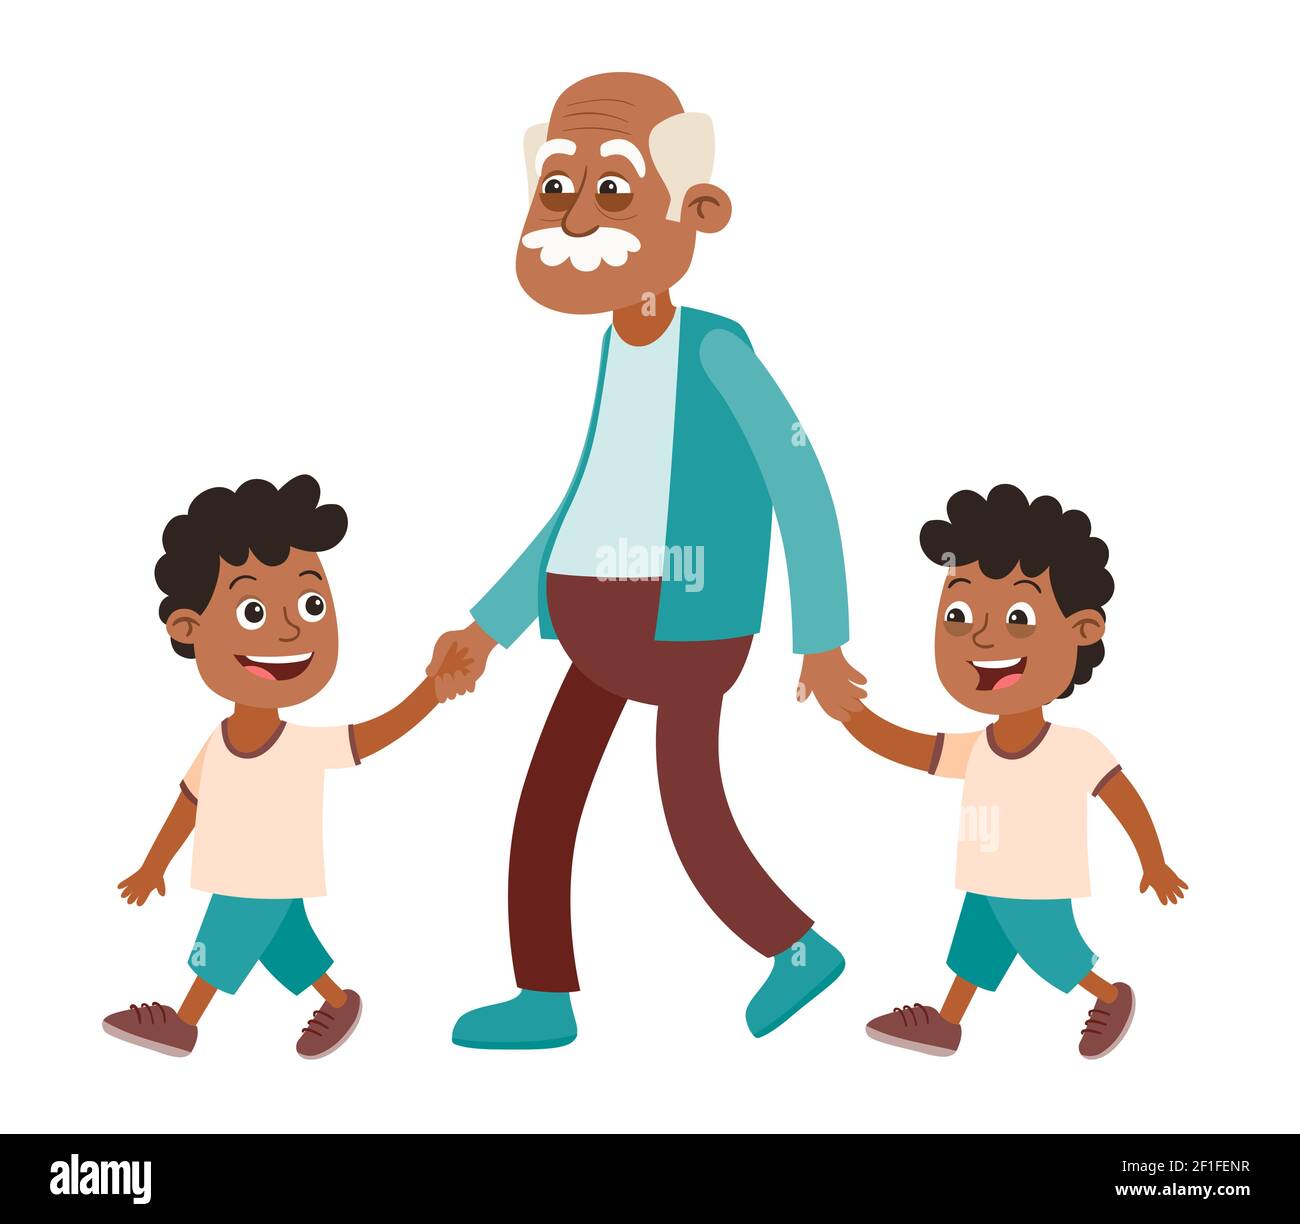 Grand-père avec ses petits-enfants marchant. Deux garçons, lits jumeaux. Il les prend par la main. Style de dessin animé, isolé sur fond blanc. Illustration vectorielle Illustration de Vecteur